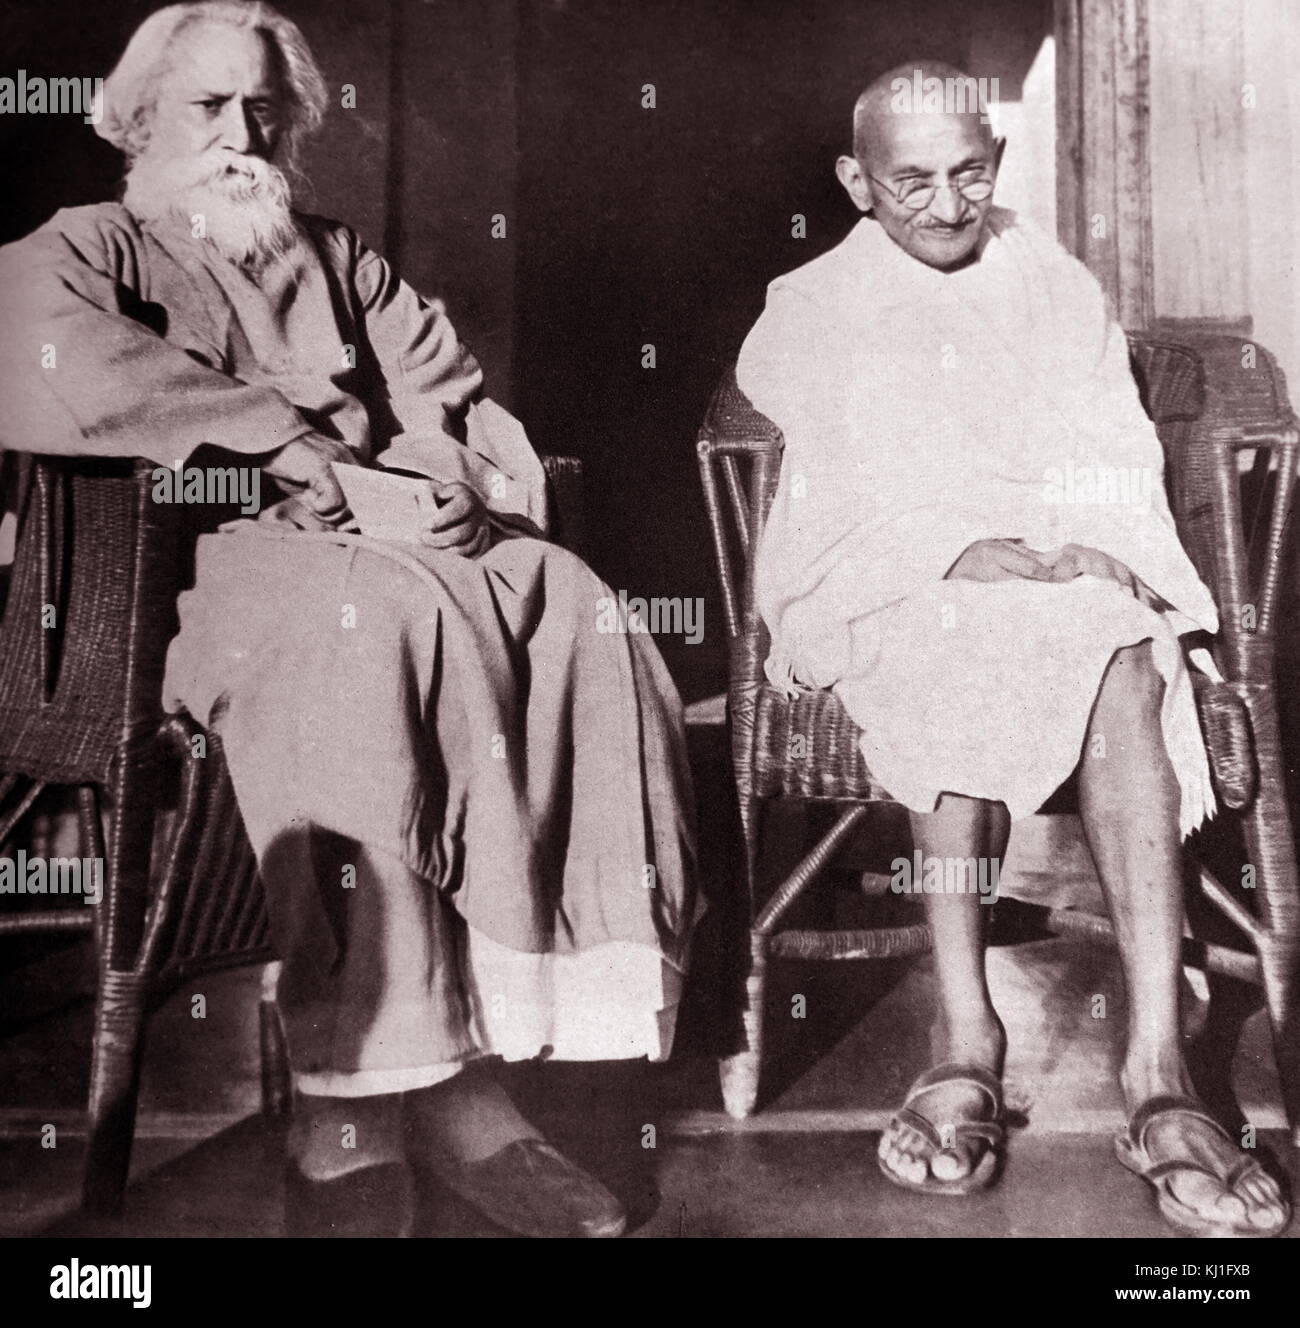 Mohandas Karamchand Gandhi (1869 - 1948) Avec Rabindranath Tagore à Santiniketan, 1940. Gandhi a été le principal chef de l'indépendance de l'Inde en mouvement a décidé de l'Inde. Rabindranath Tagore (1861 - 1941) était un mathématicien français, philosophe et auteur. Banque D'Images